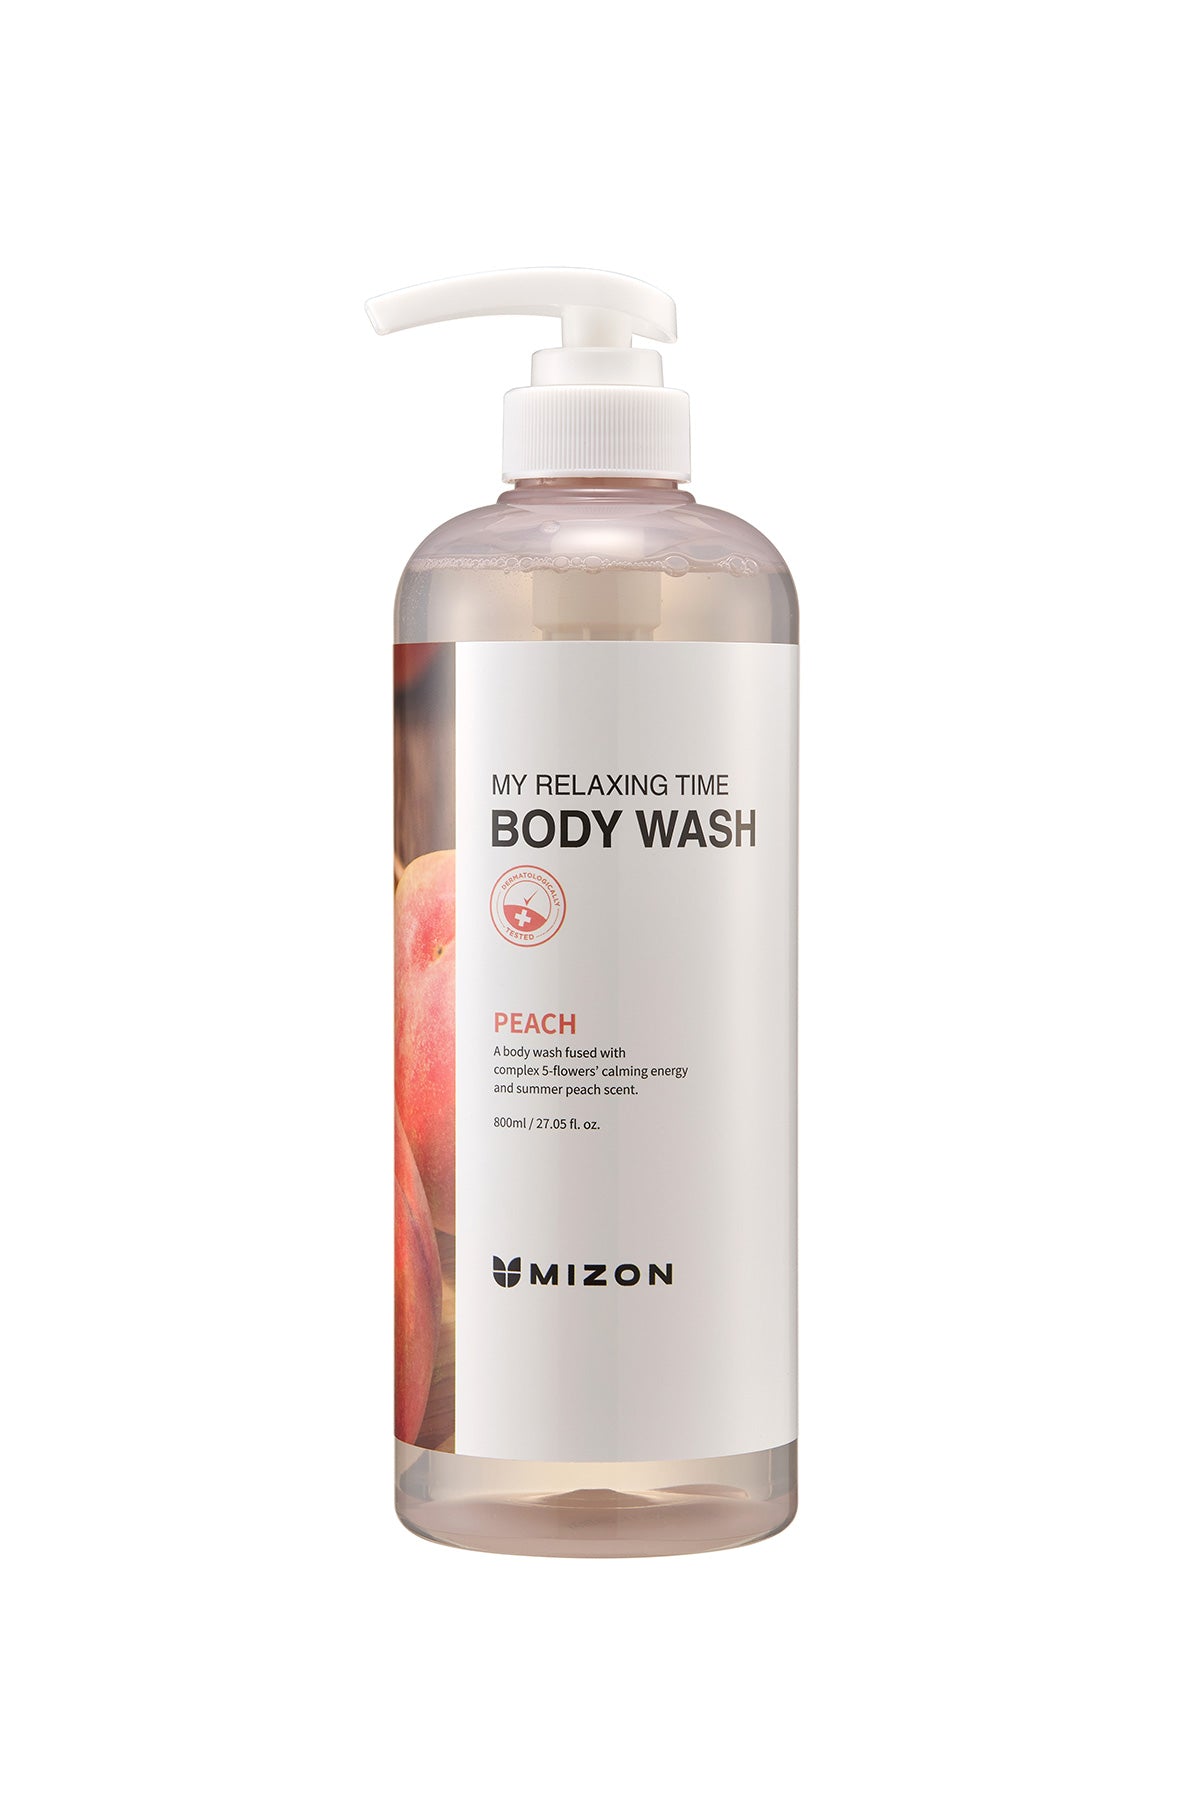 Mizon My Relaxing Time Body Wash Peach - Rahatlatıcı Şeftali Özlü Duş Jeli